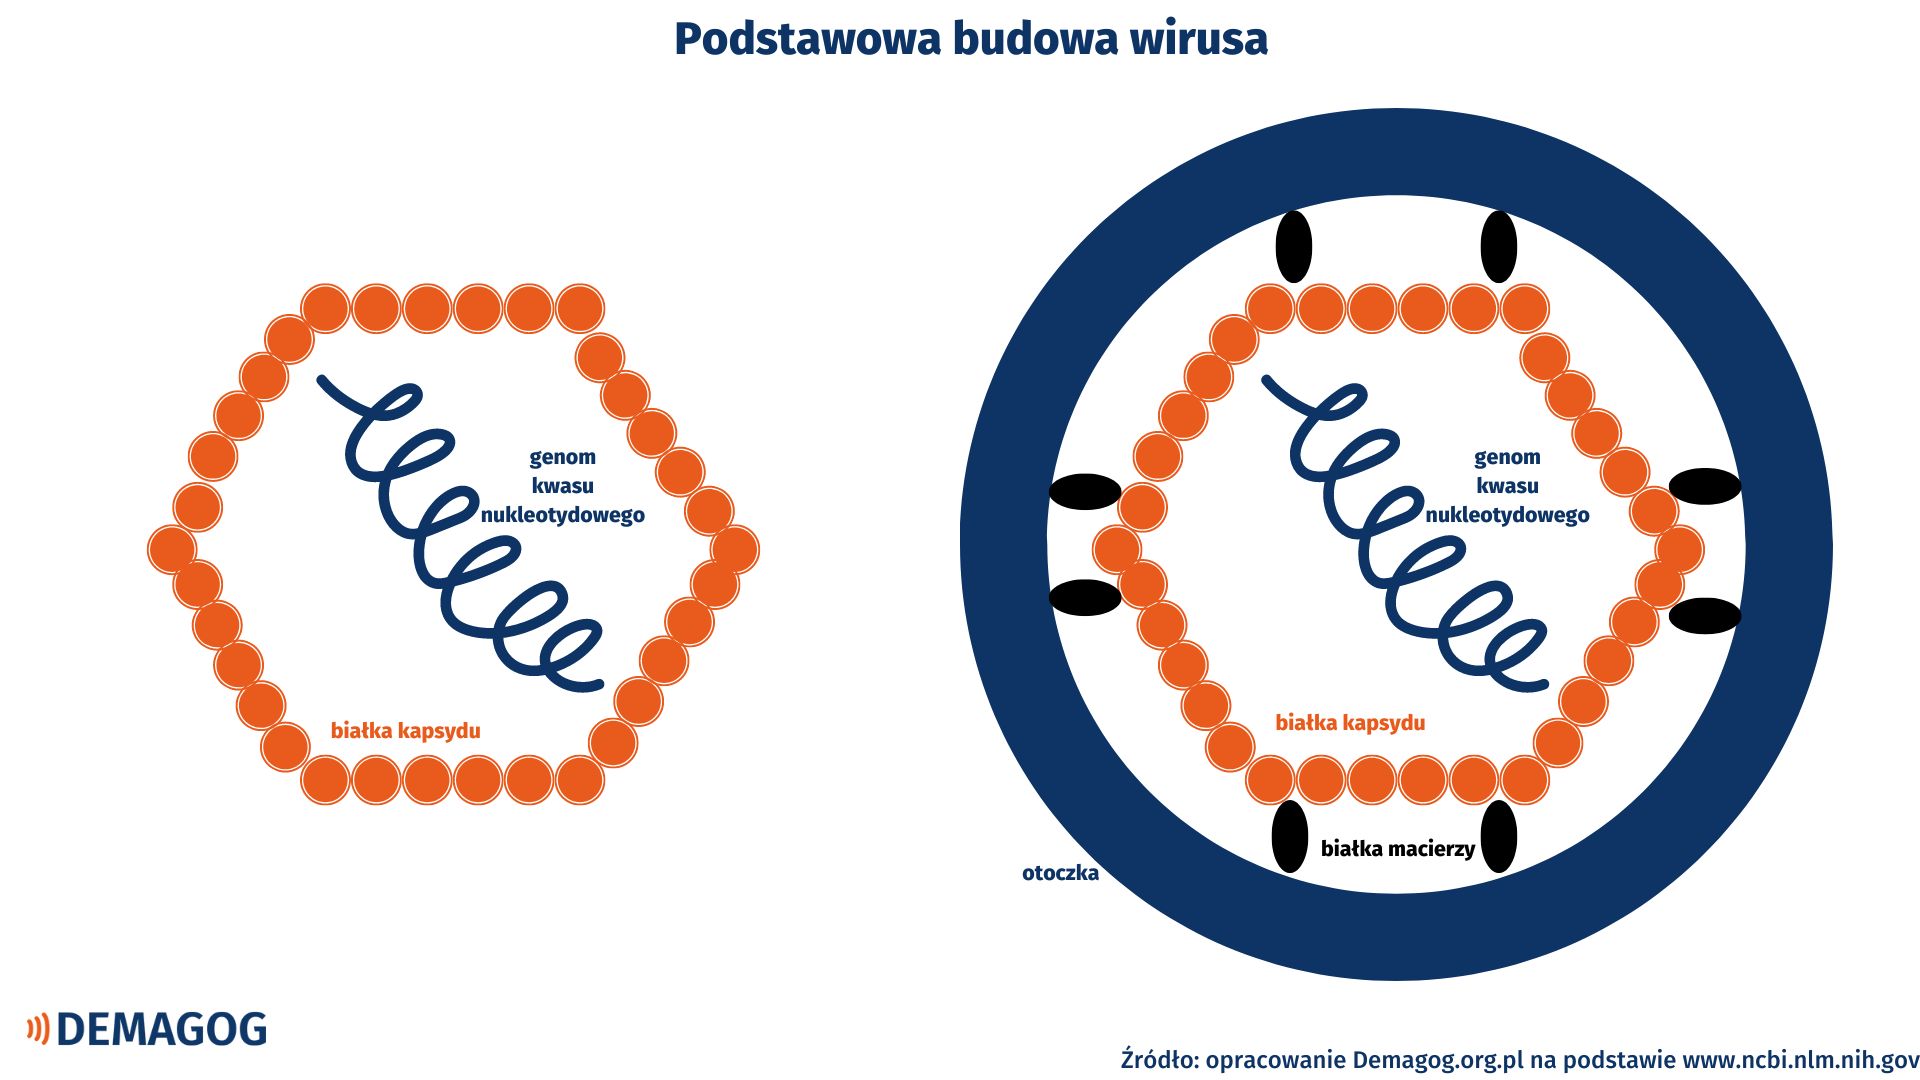 Grafika przedstawiająca podstawową budowę wirusów. Widoczny jest wirus z genomem kwasu nukleotydowego i kapsydem oraz wirus z genomem kwasu nukleotydowego, kapsydem i otoczką.